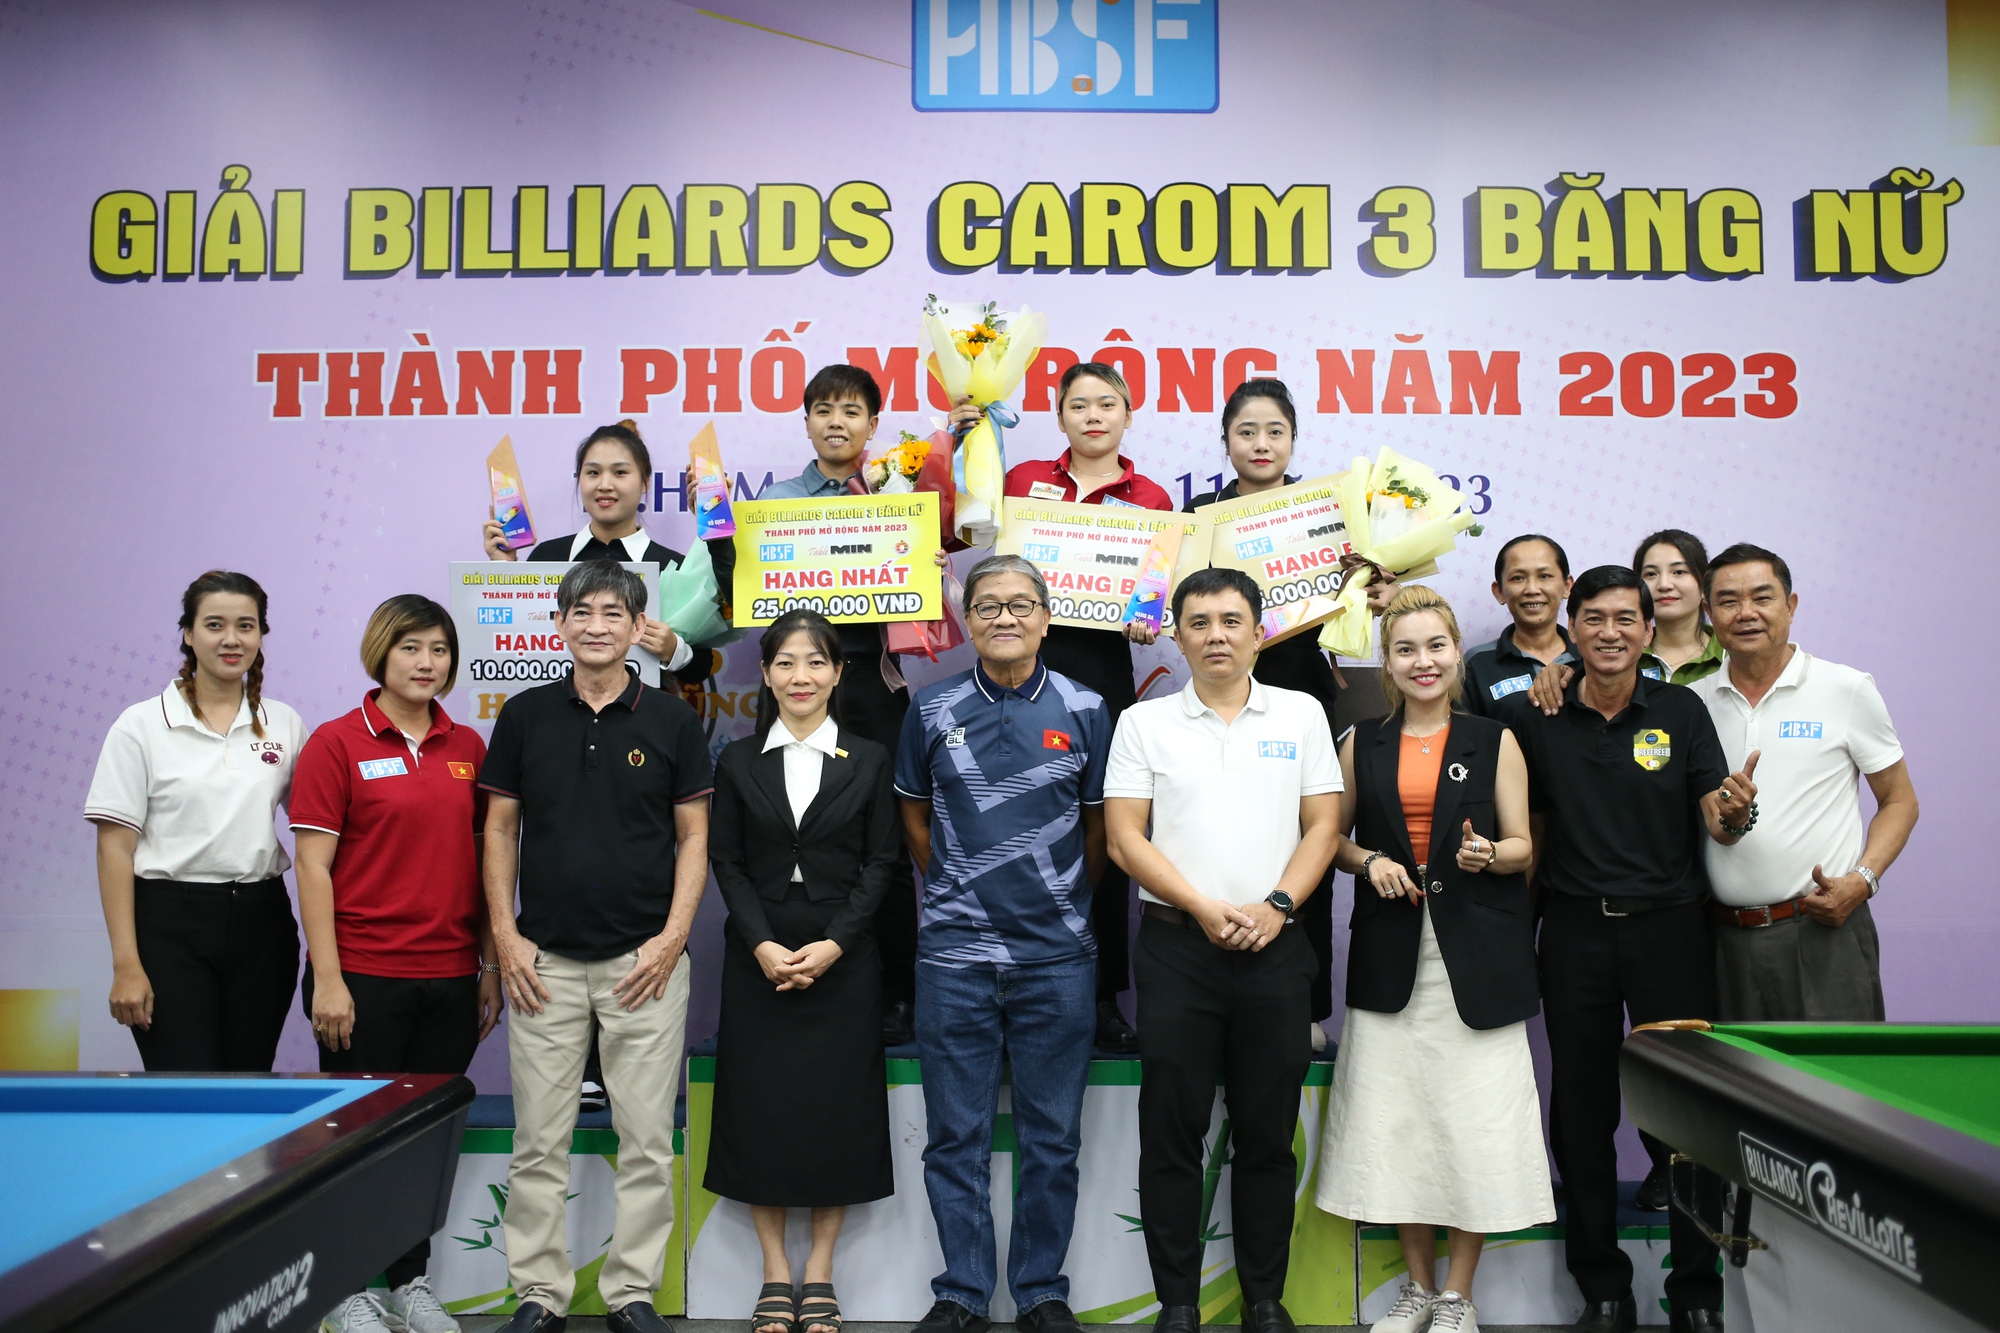 Cơ thủ Bích Trâm lên ngôi tại Giải billiards carom 3 băng nữ TP.HCM - Ảnh 1.